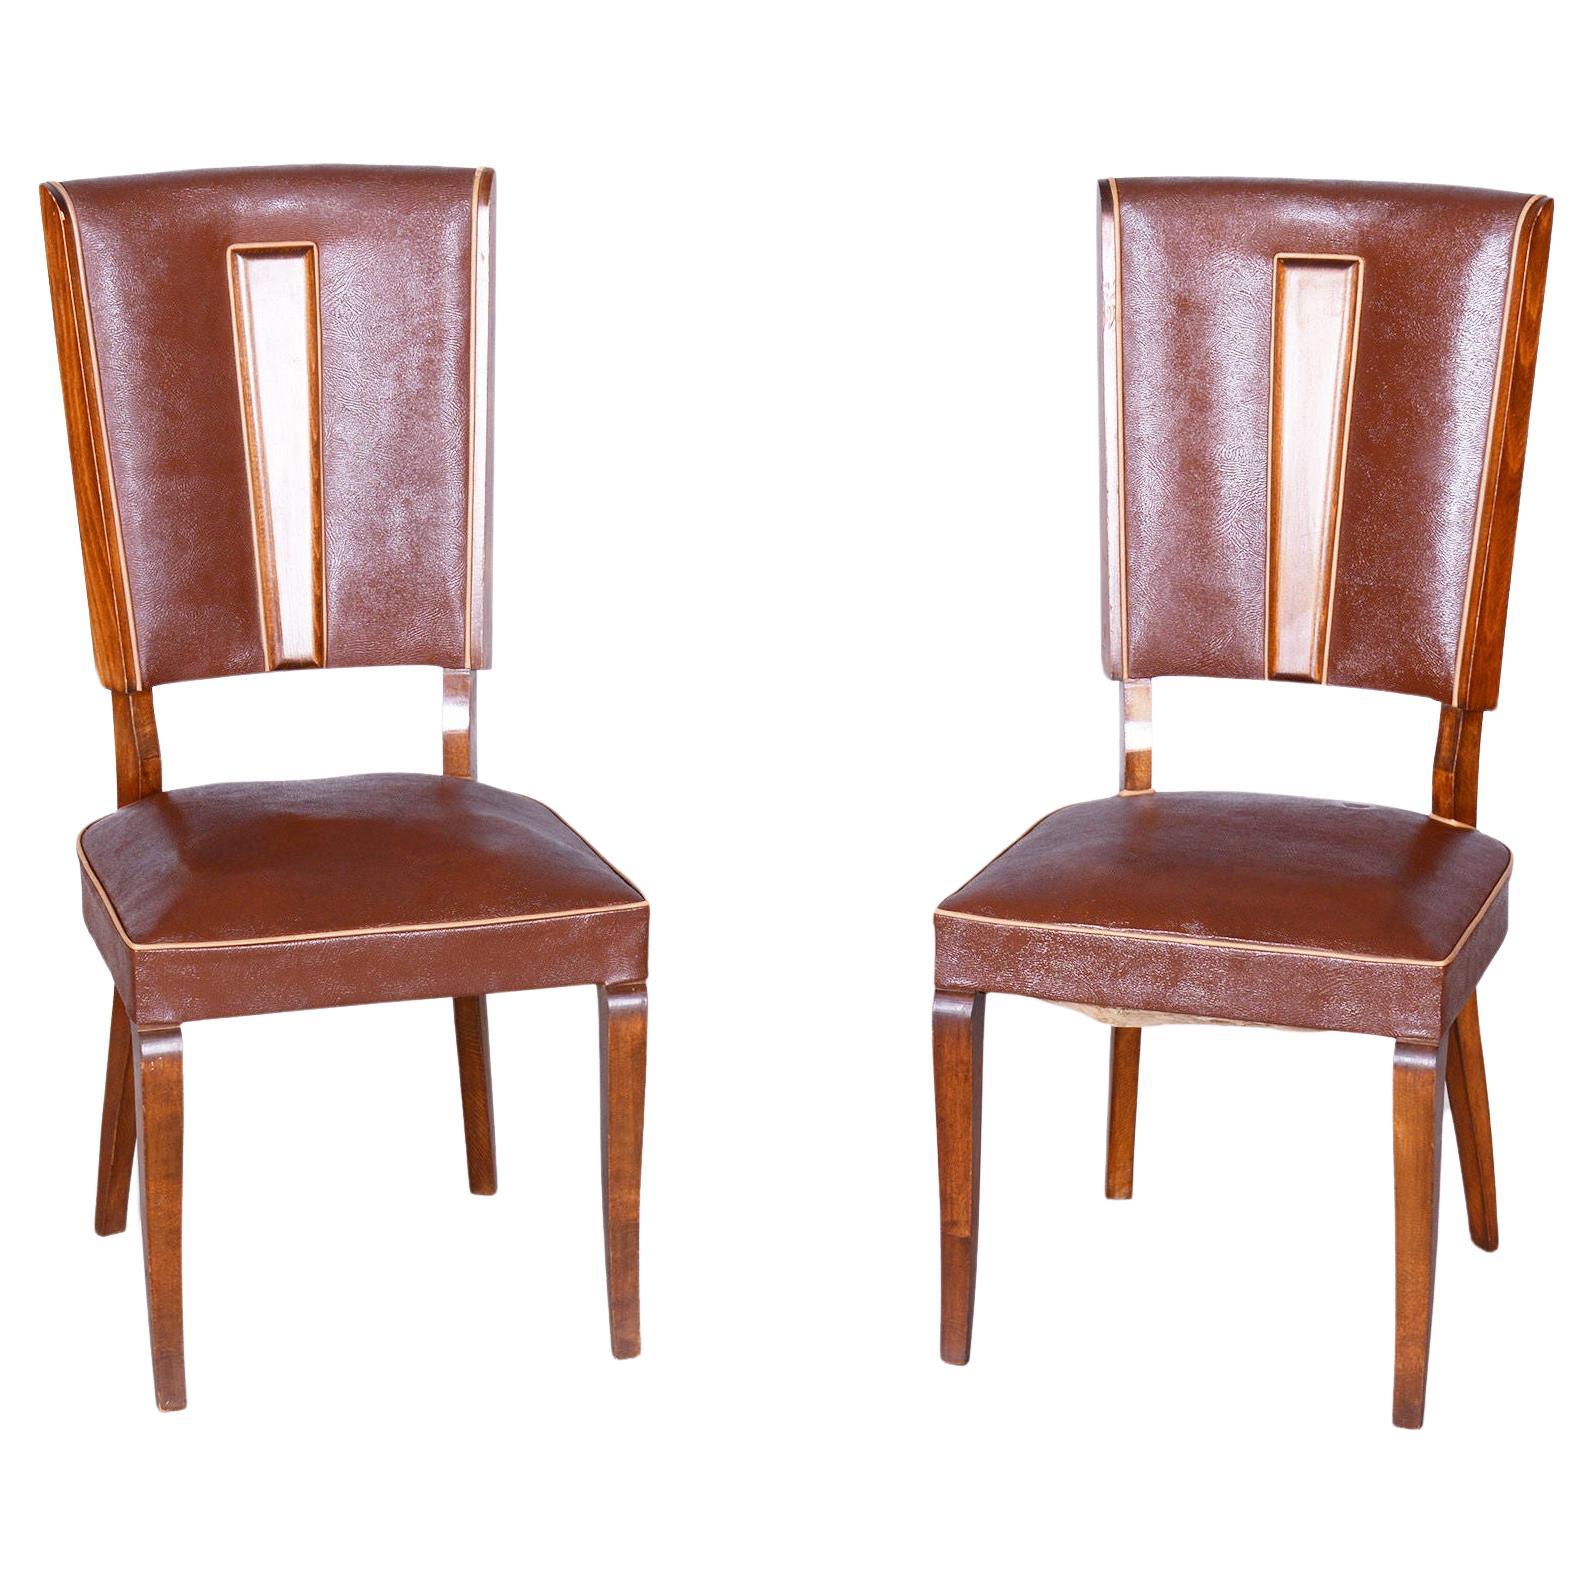 Original Art-Déco-Stühle von Jules Leleu, Buche, Frankreich, 1920er Jahre, Paar